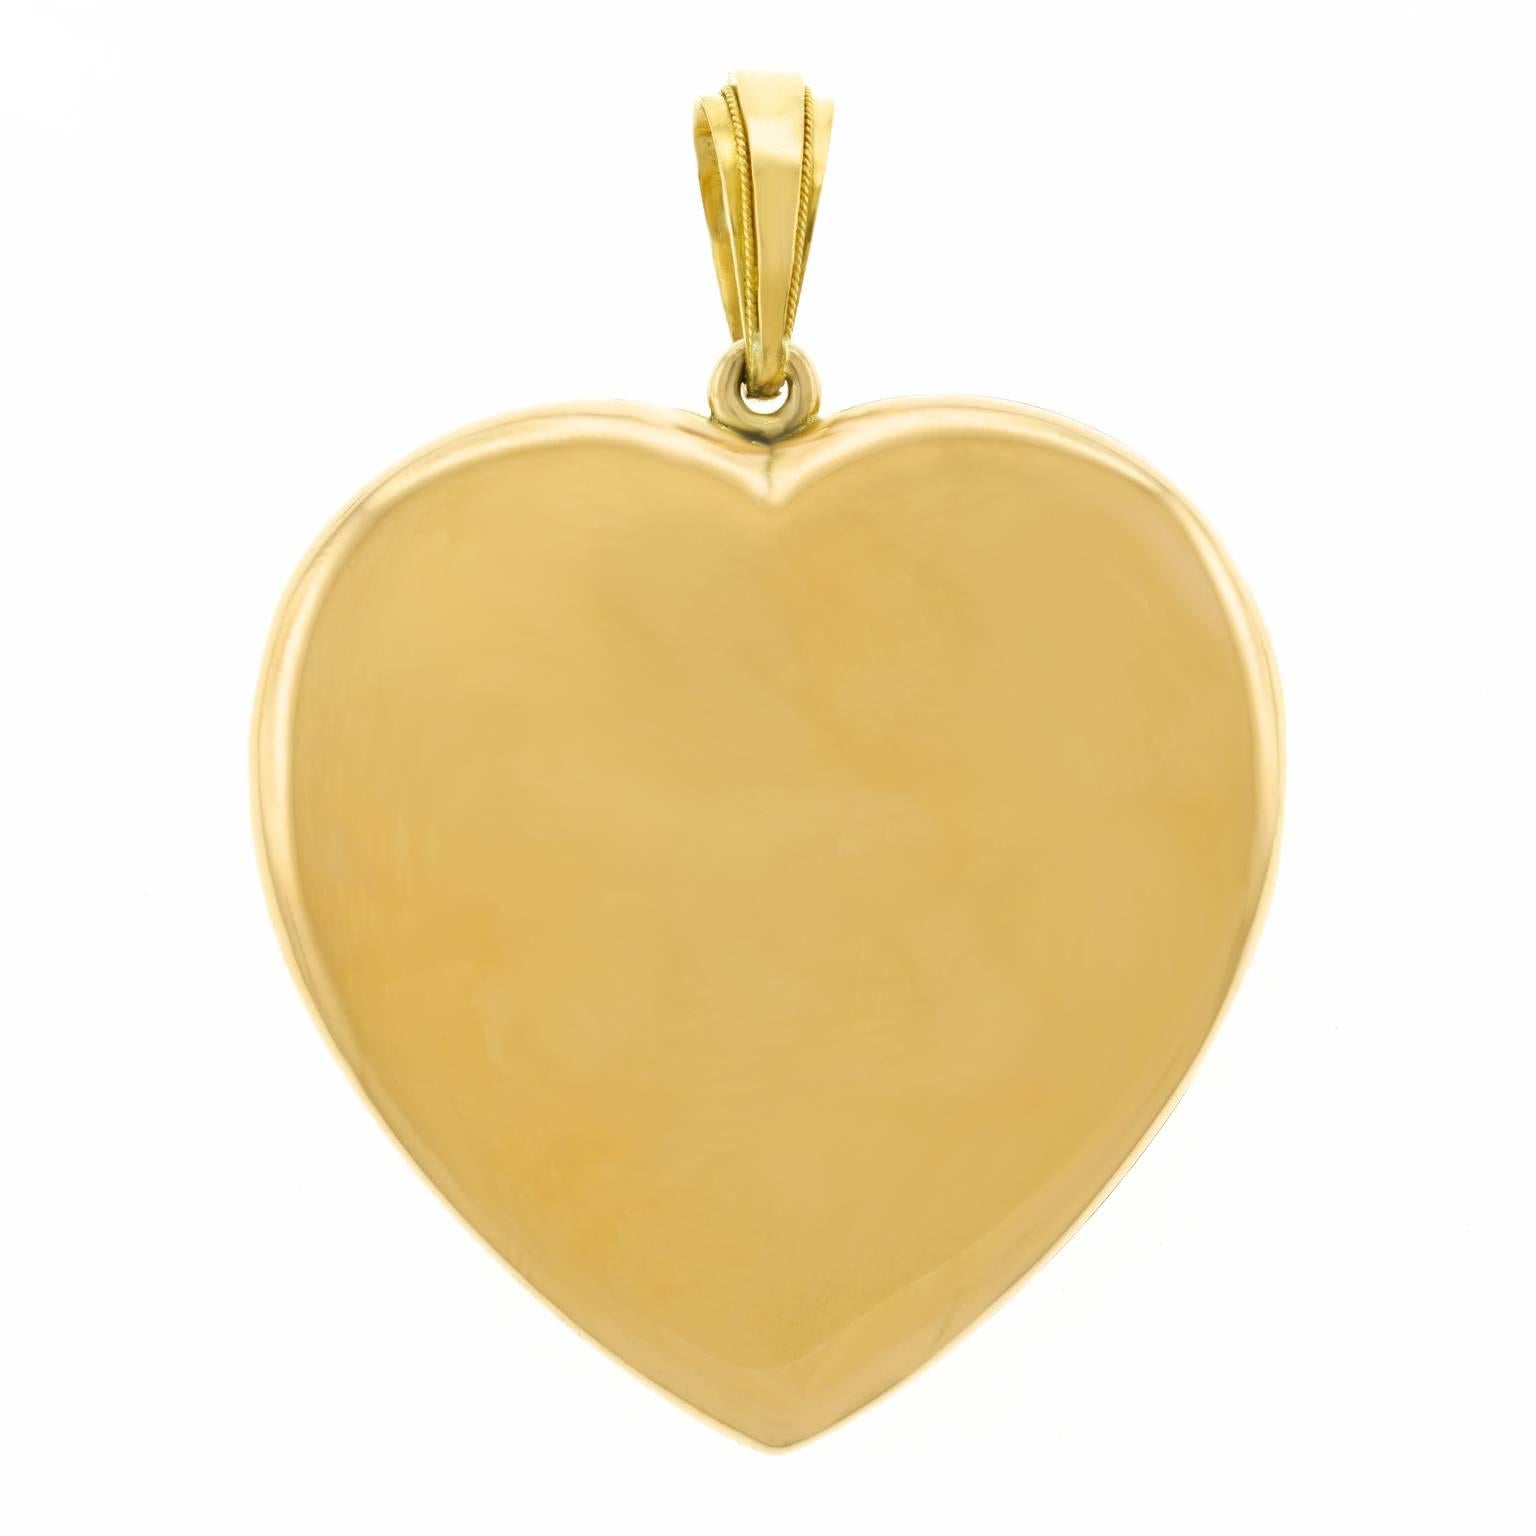 Spectacular Renaissance Revival Gold Heart Locket 3